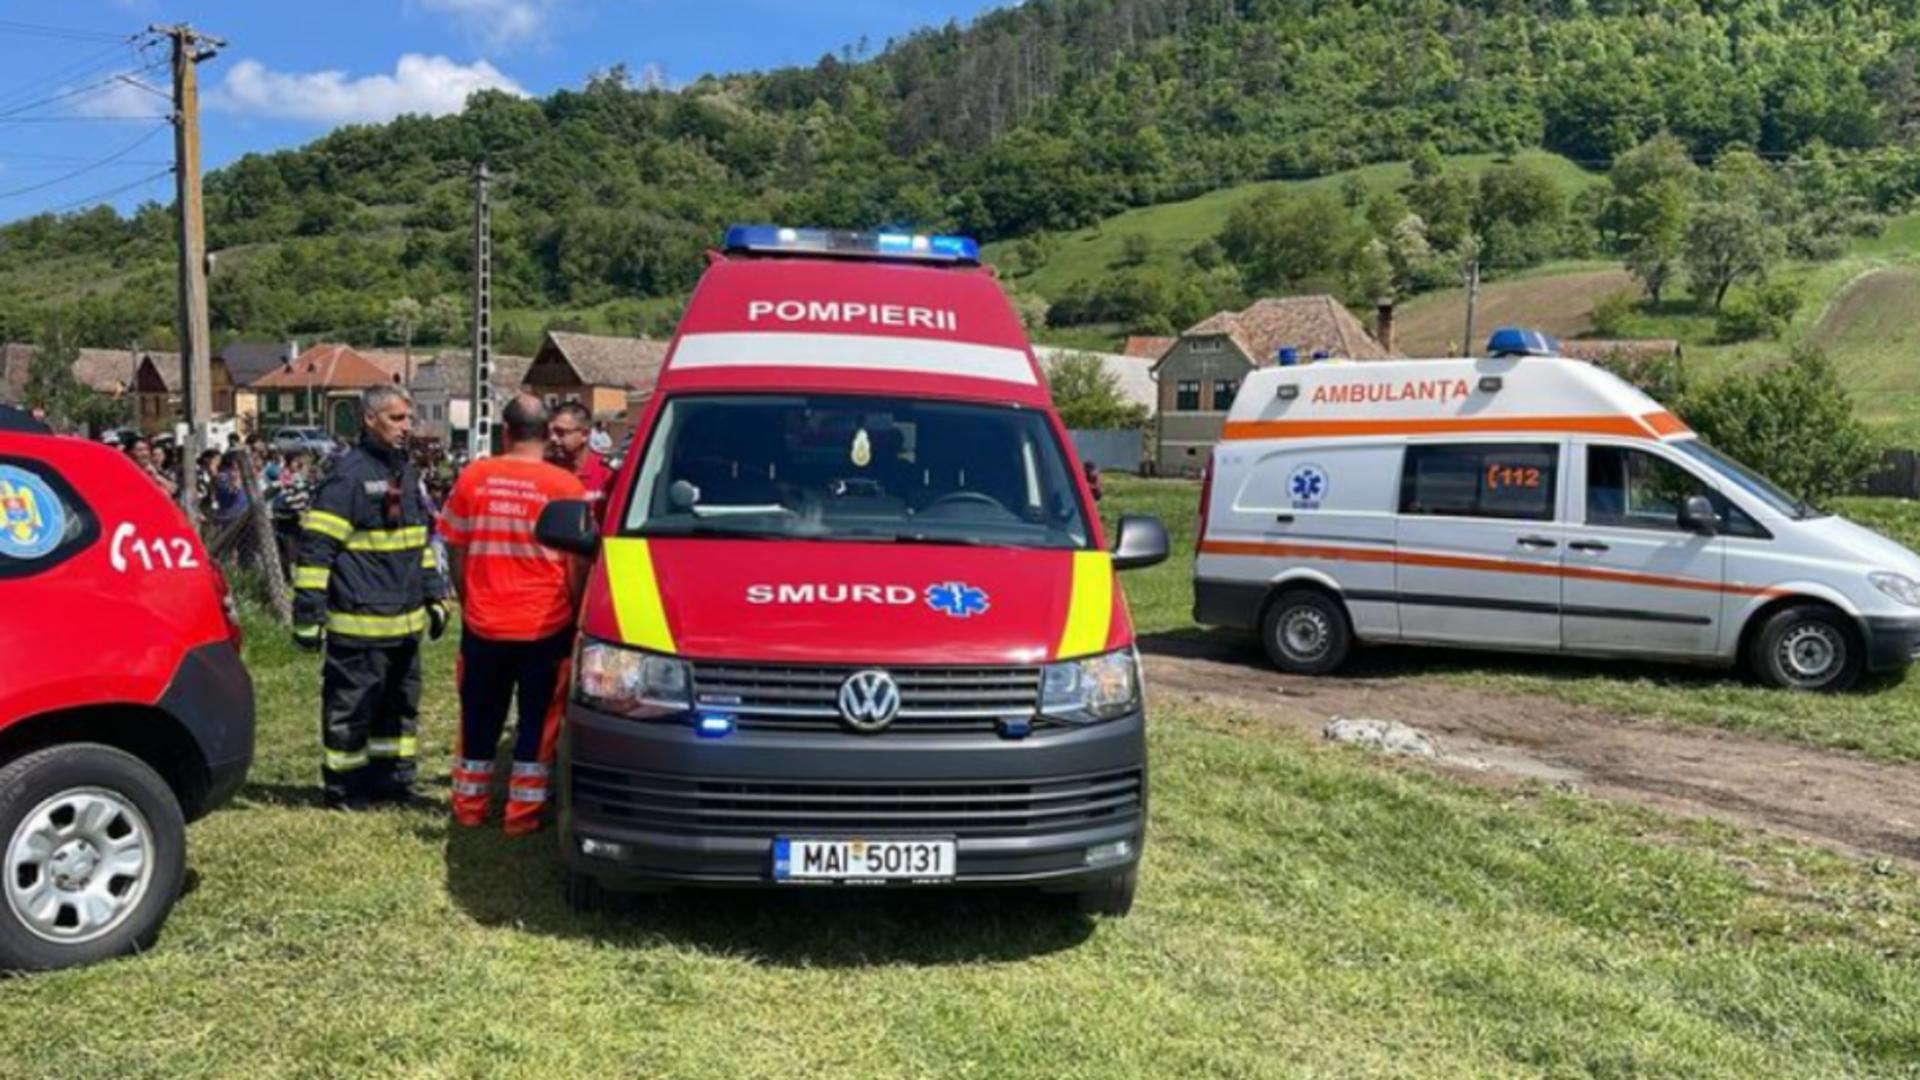 Un copil de 7 ani a decedat după ce a fost prins sub o autoutilitară, la Sibiu. Poliția a deschis un dosar penal pentru ucidere din culpă